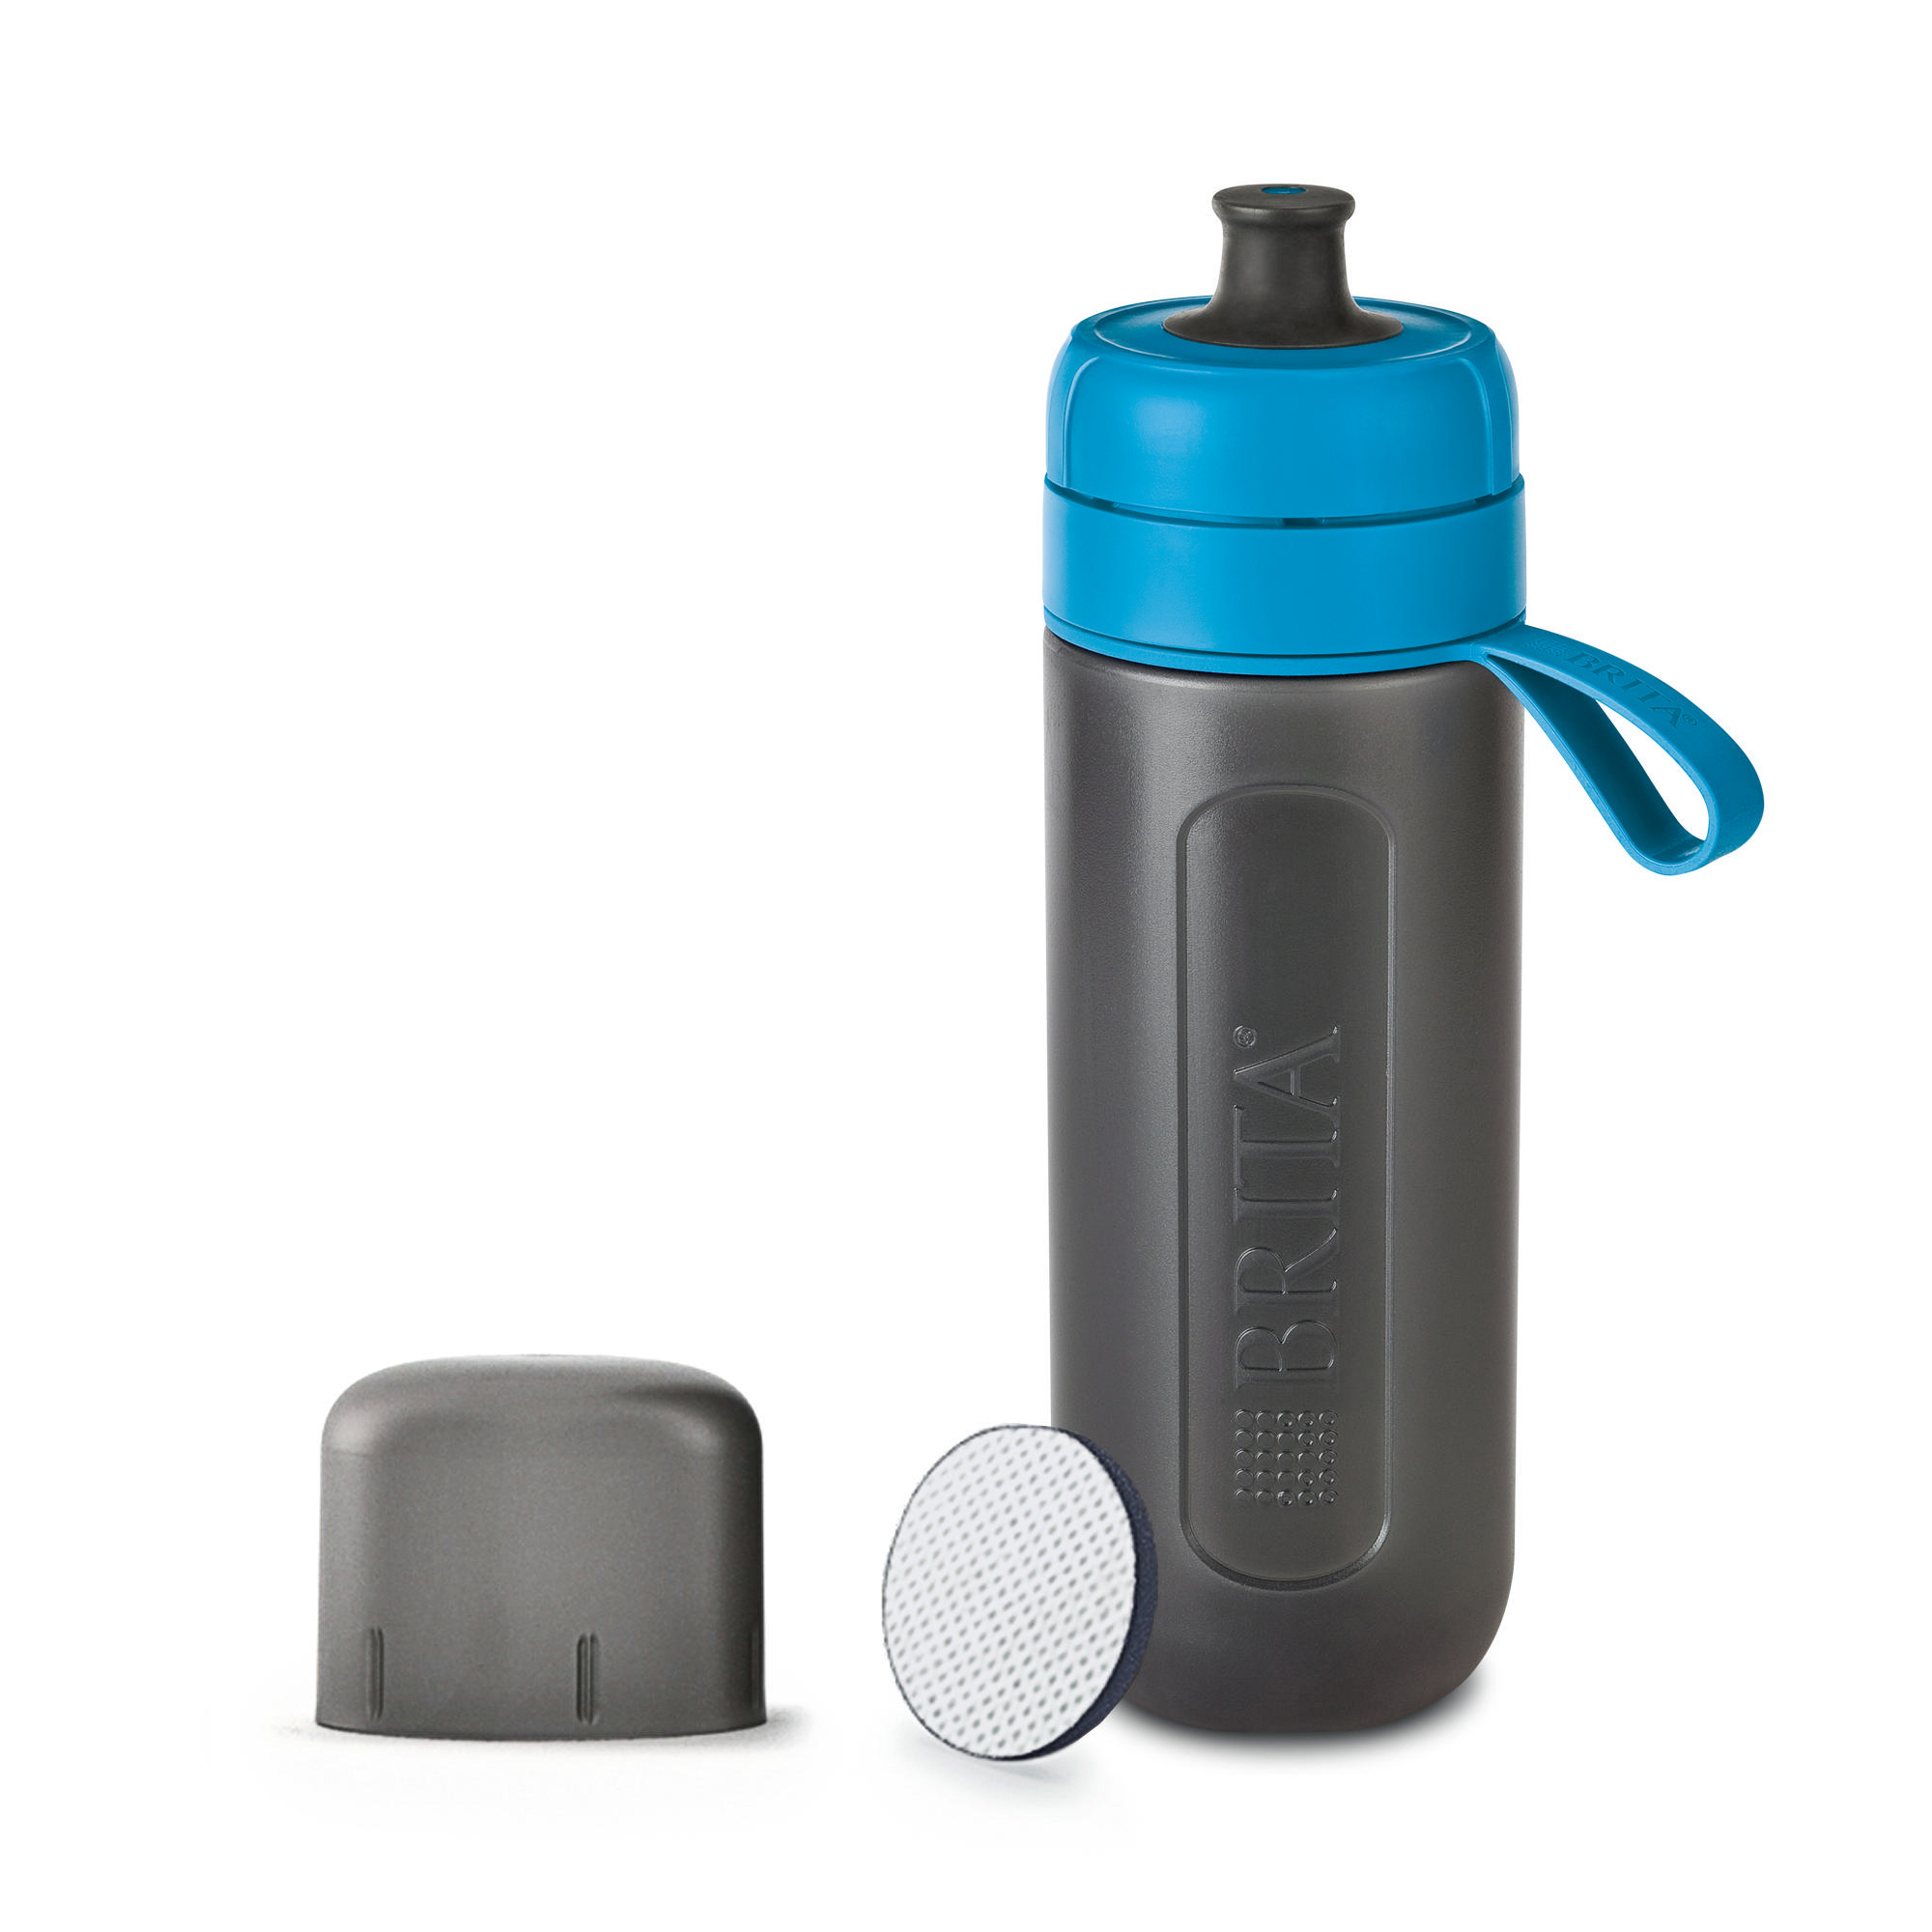 BRITA Active Trinkflasche mit Wasserfilter, Blau/Grau